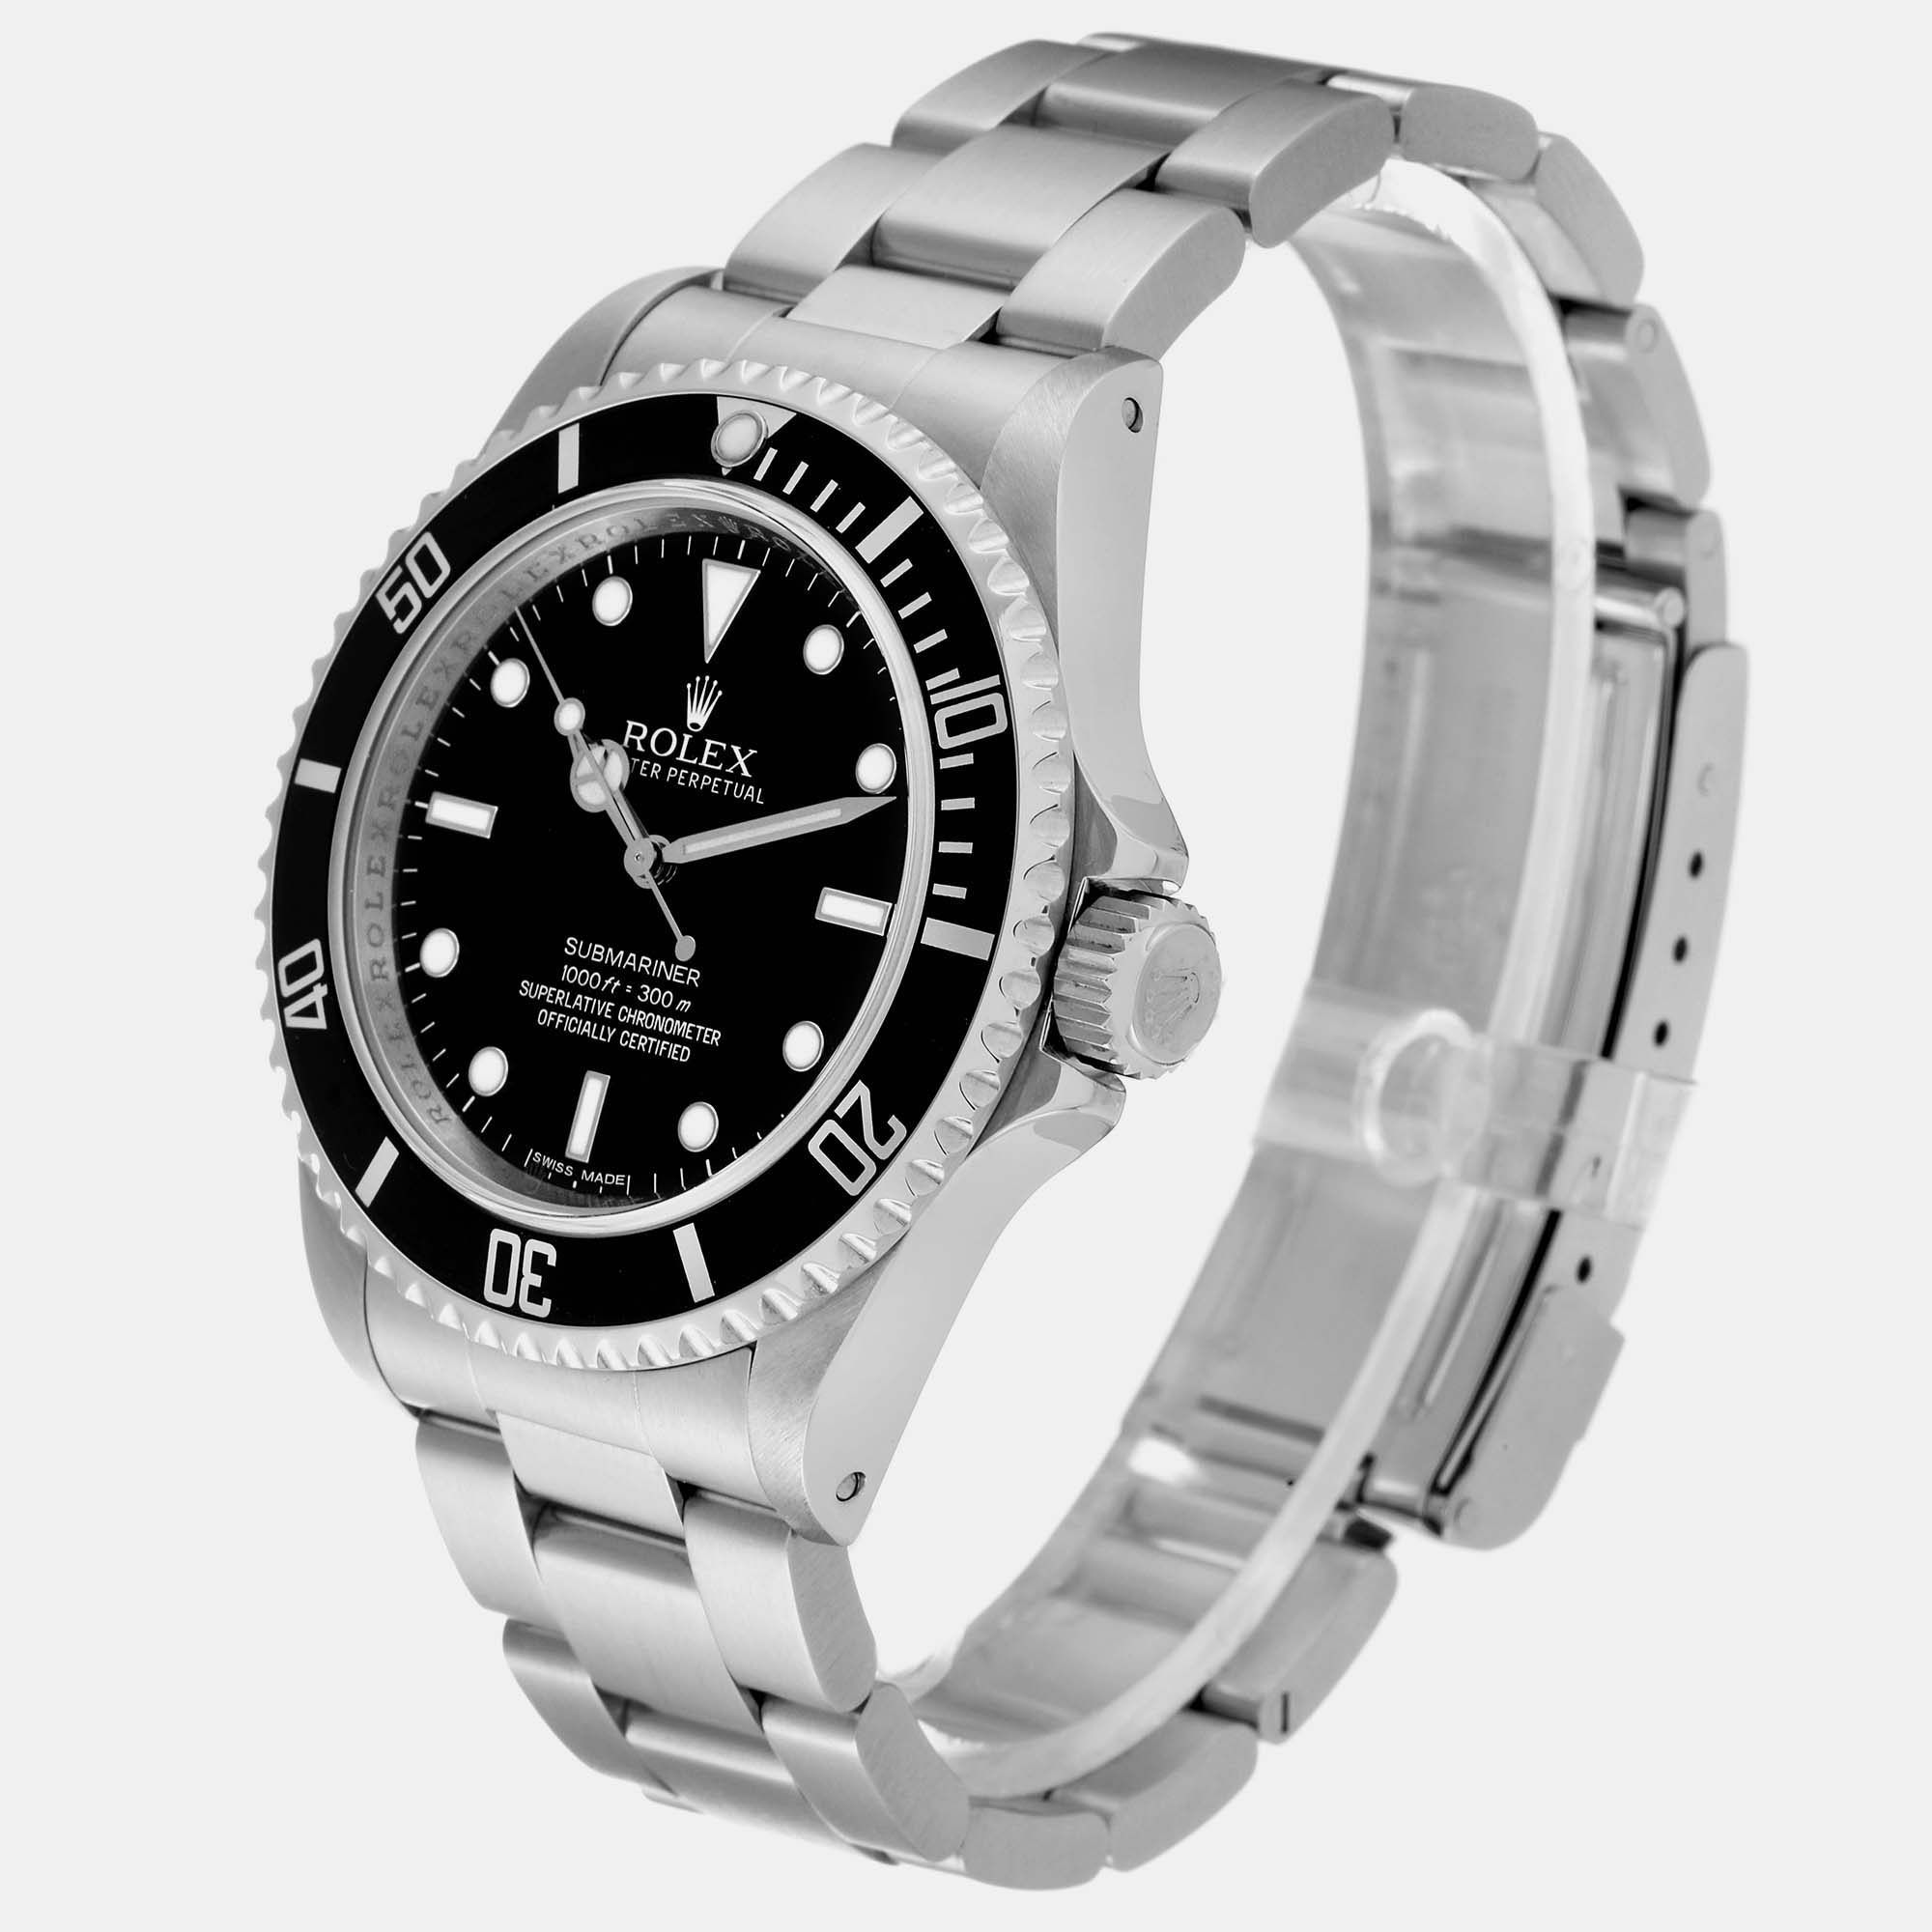 Rolex Submariner No Date 40mm 4 Liner Steel Mens Watch 14060